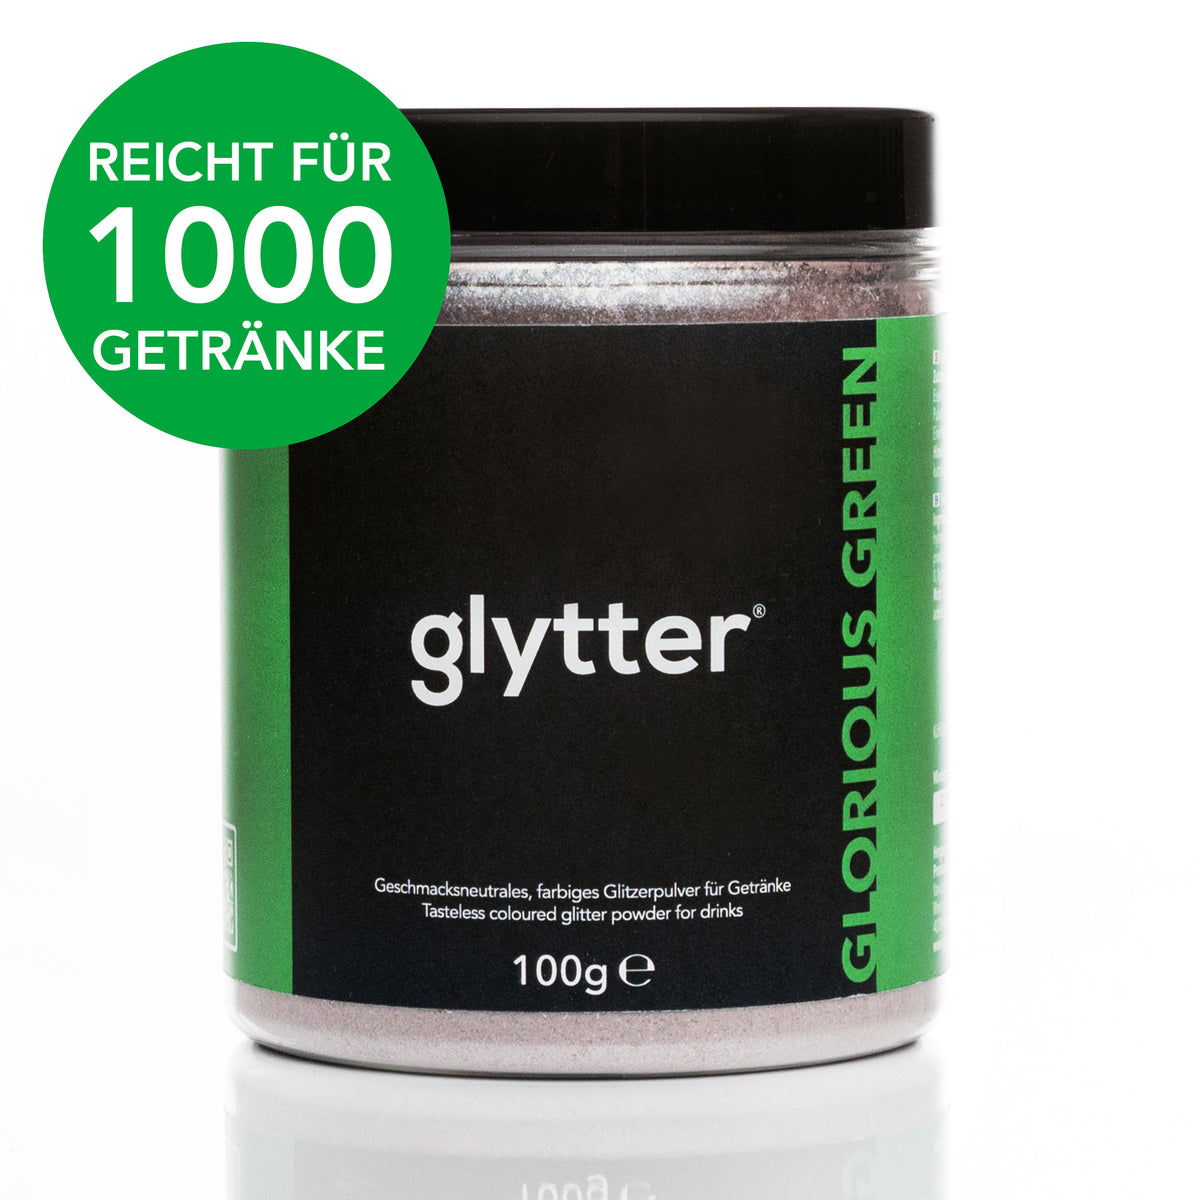 Farbiges Glitzerpulver für Getränke - Grün (100g) - Vorteilspack